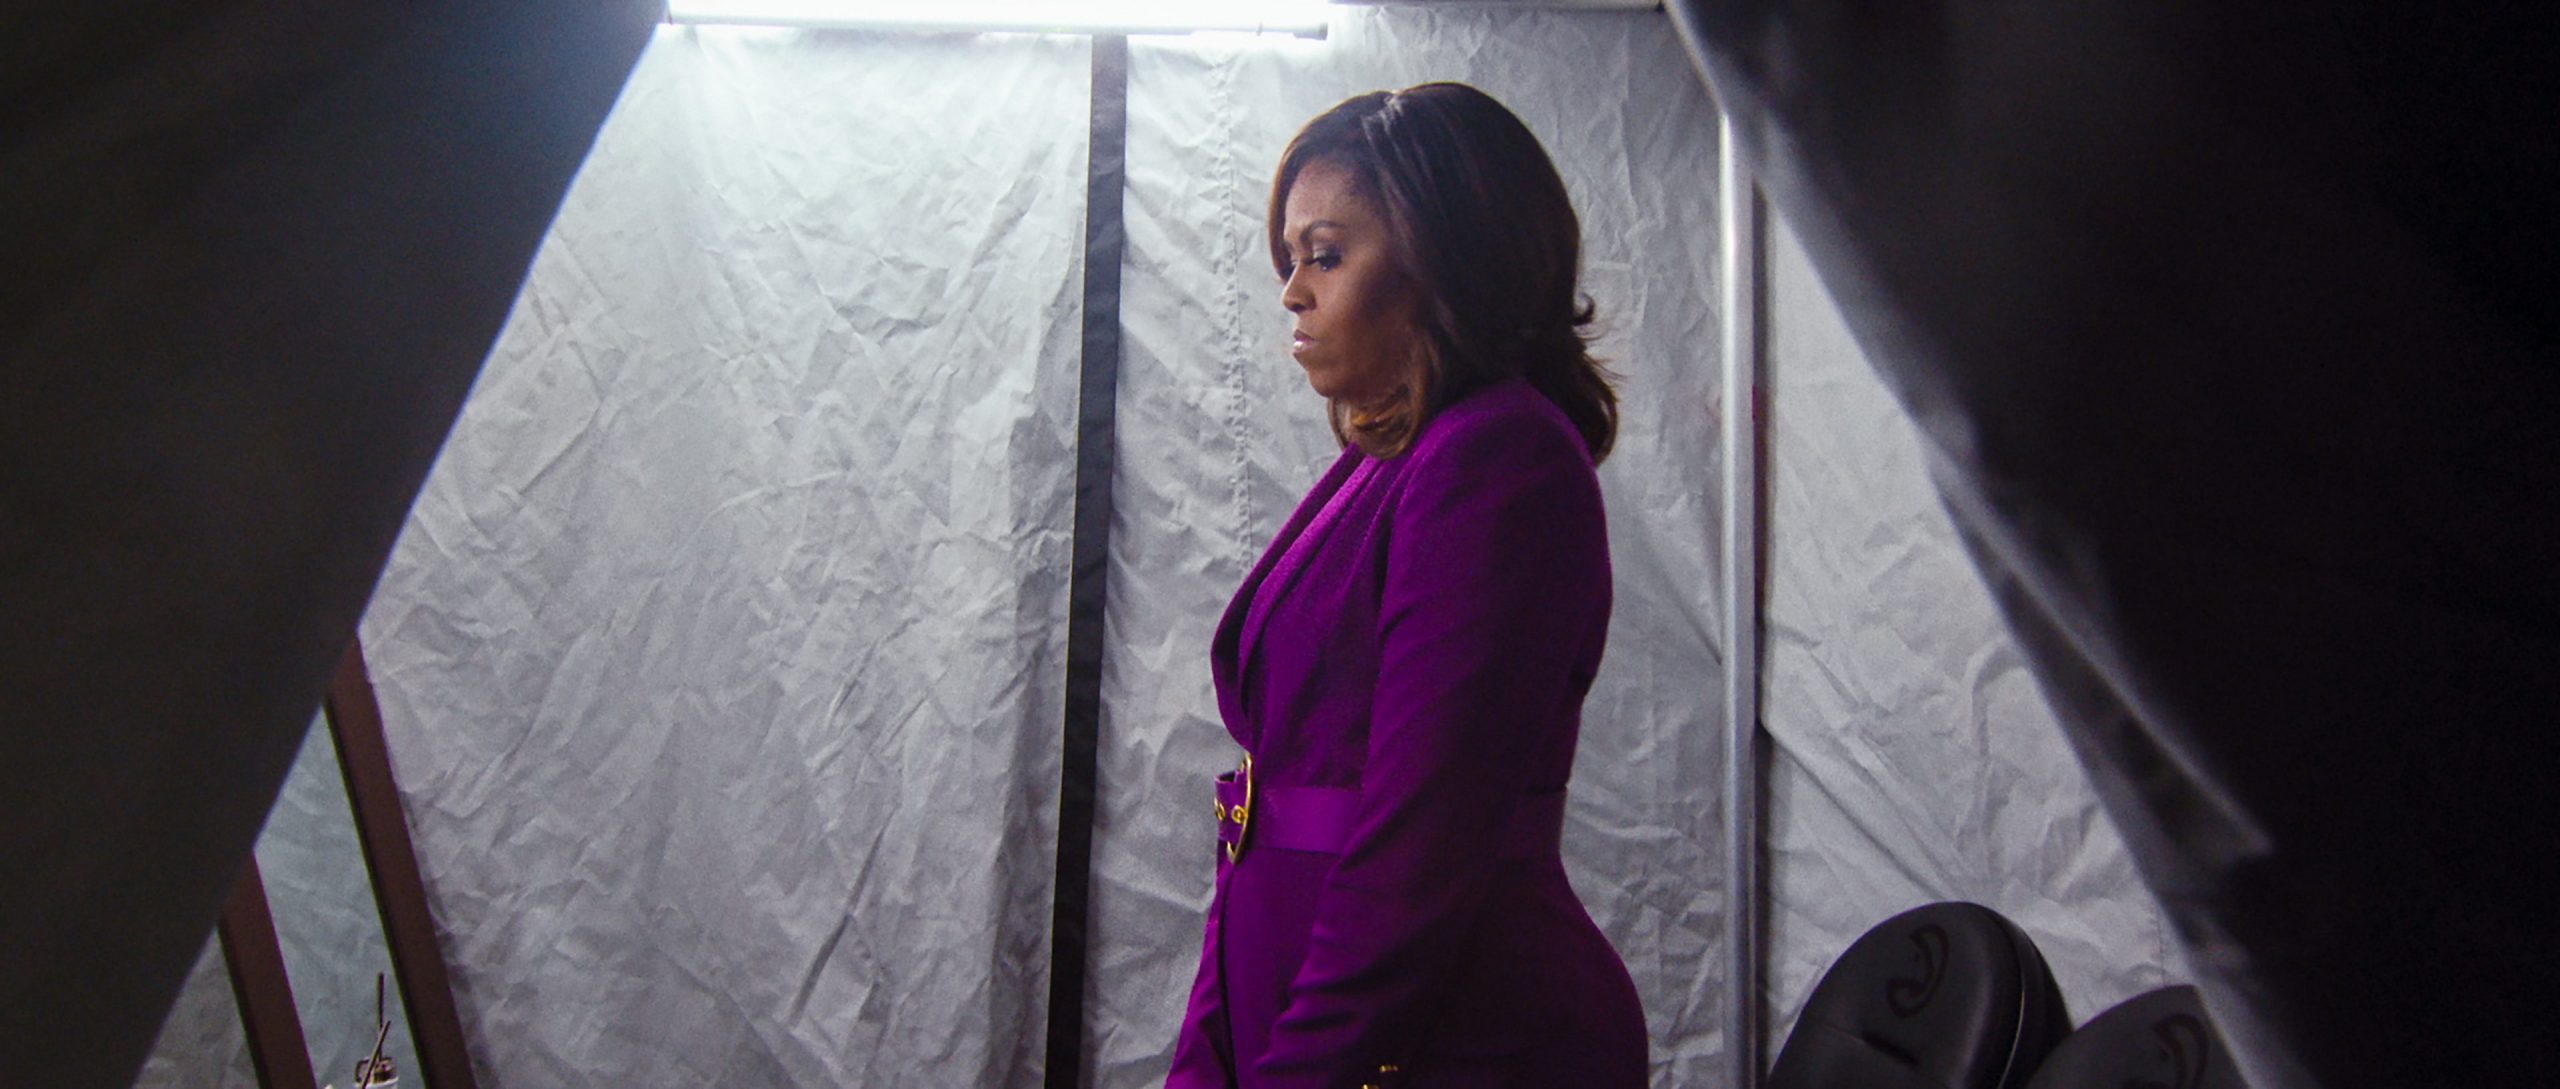 Netflix giới thiệu phim tài liệu ‘Becoming’ mới nói về phu nhân Michelle Obama, sẽ phát hành vào 6/5